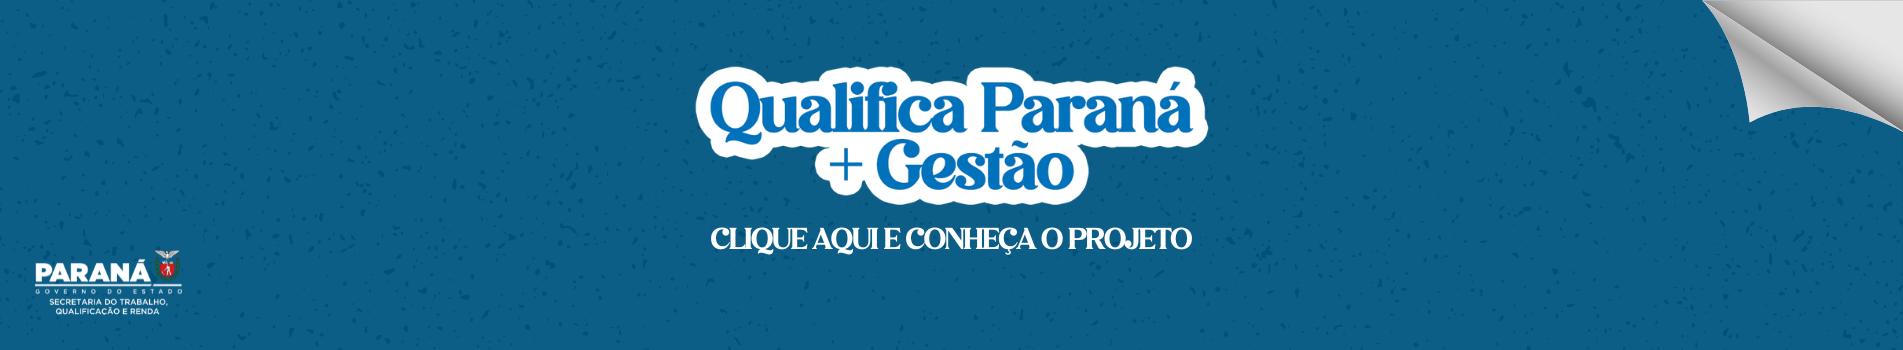 Qualifica Paraná + Gestão 